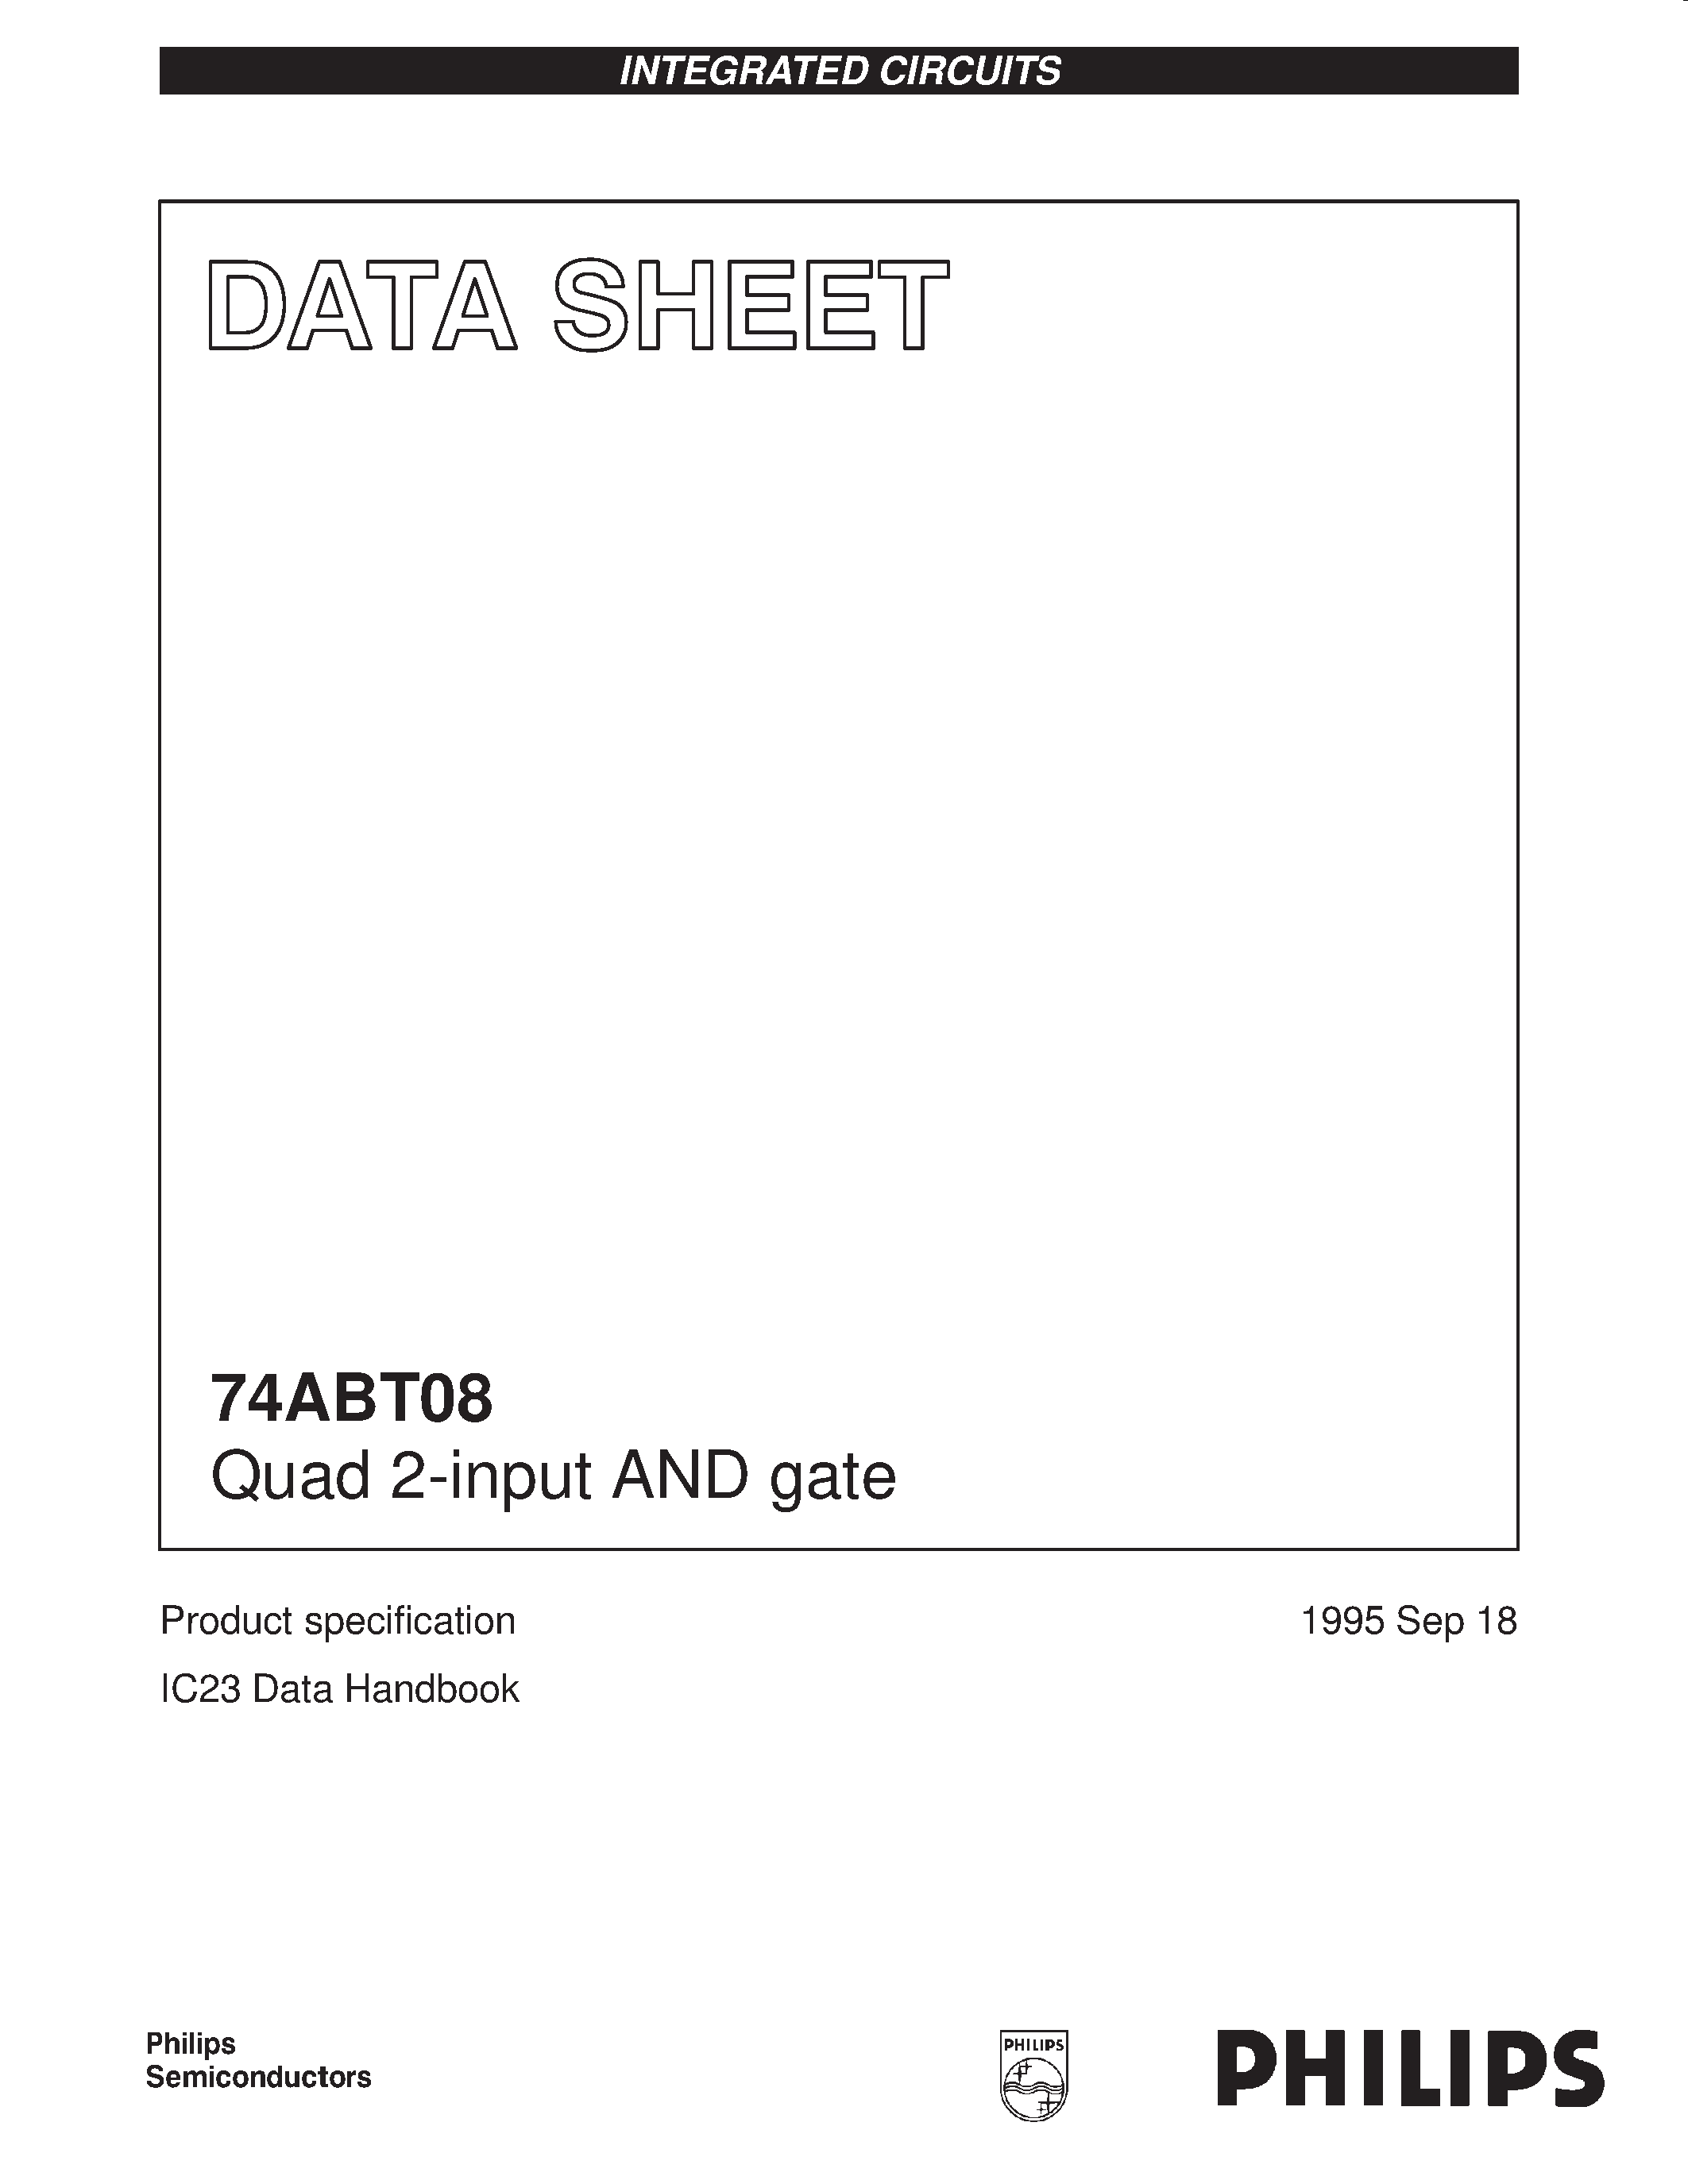 Даташит 74ABT08PW - Quad 2-input AND gate страница 1